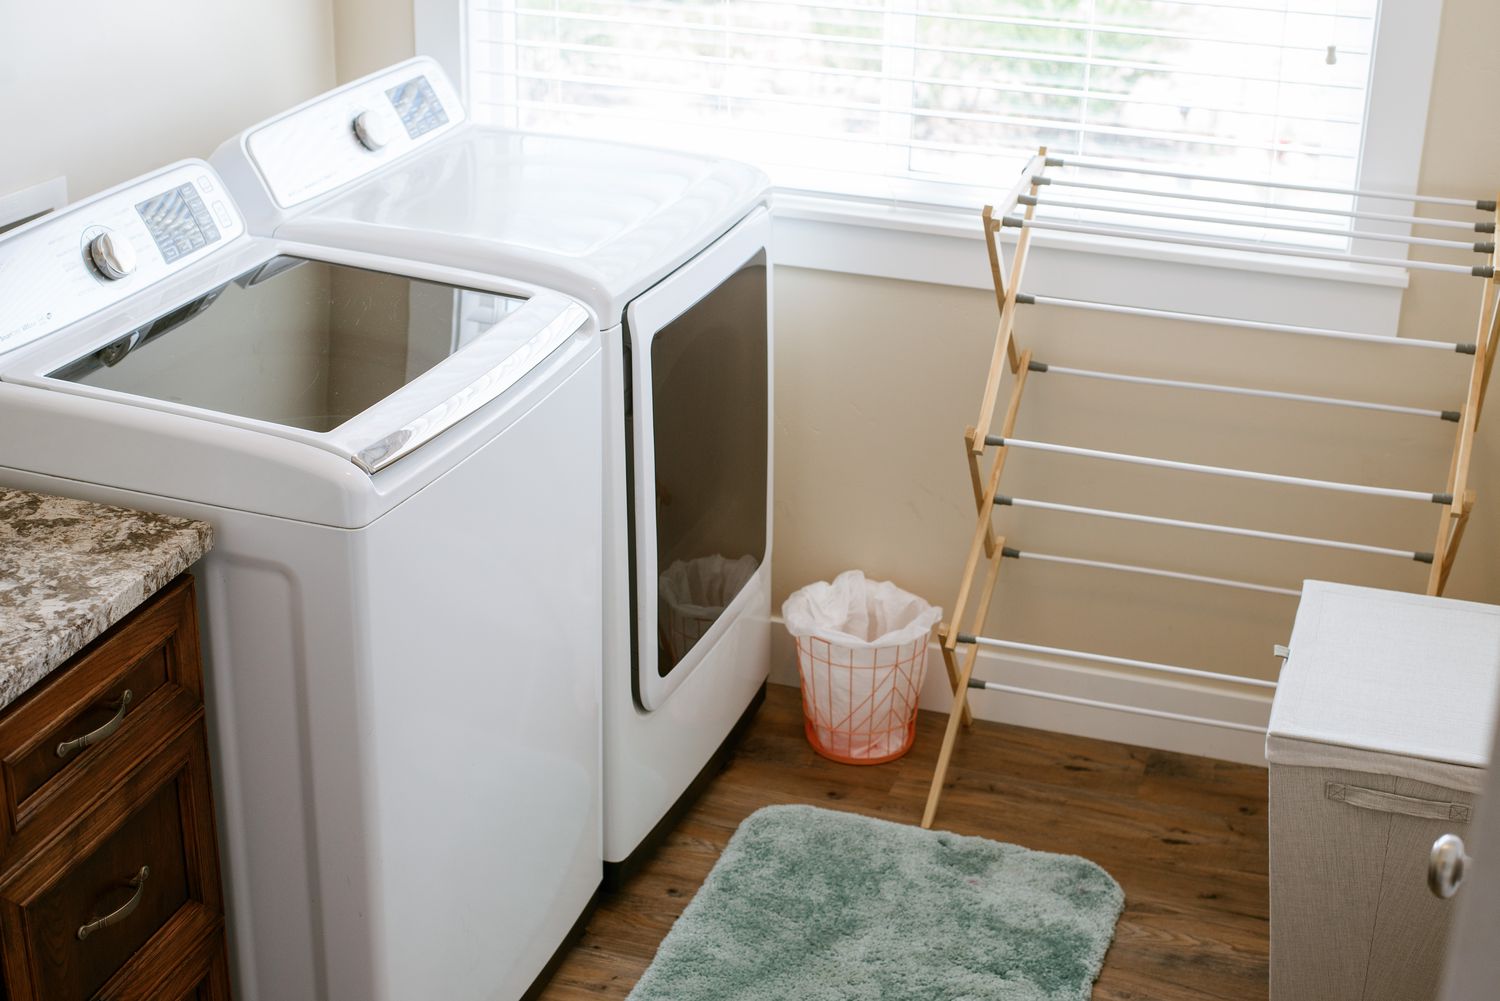 Waschküche mit Wäscheständer und weißen Maschinen am hell erleuchteten Fenster